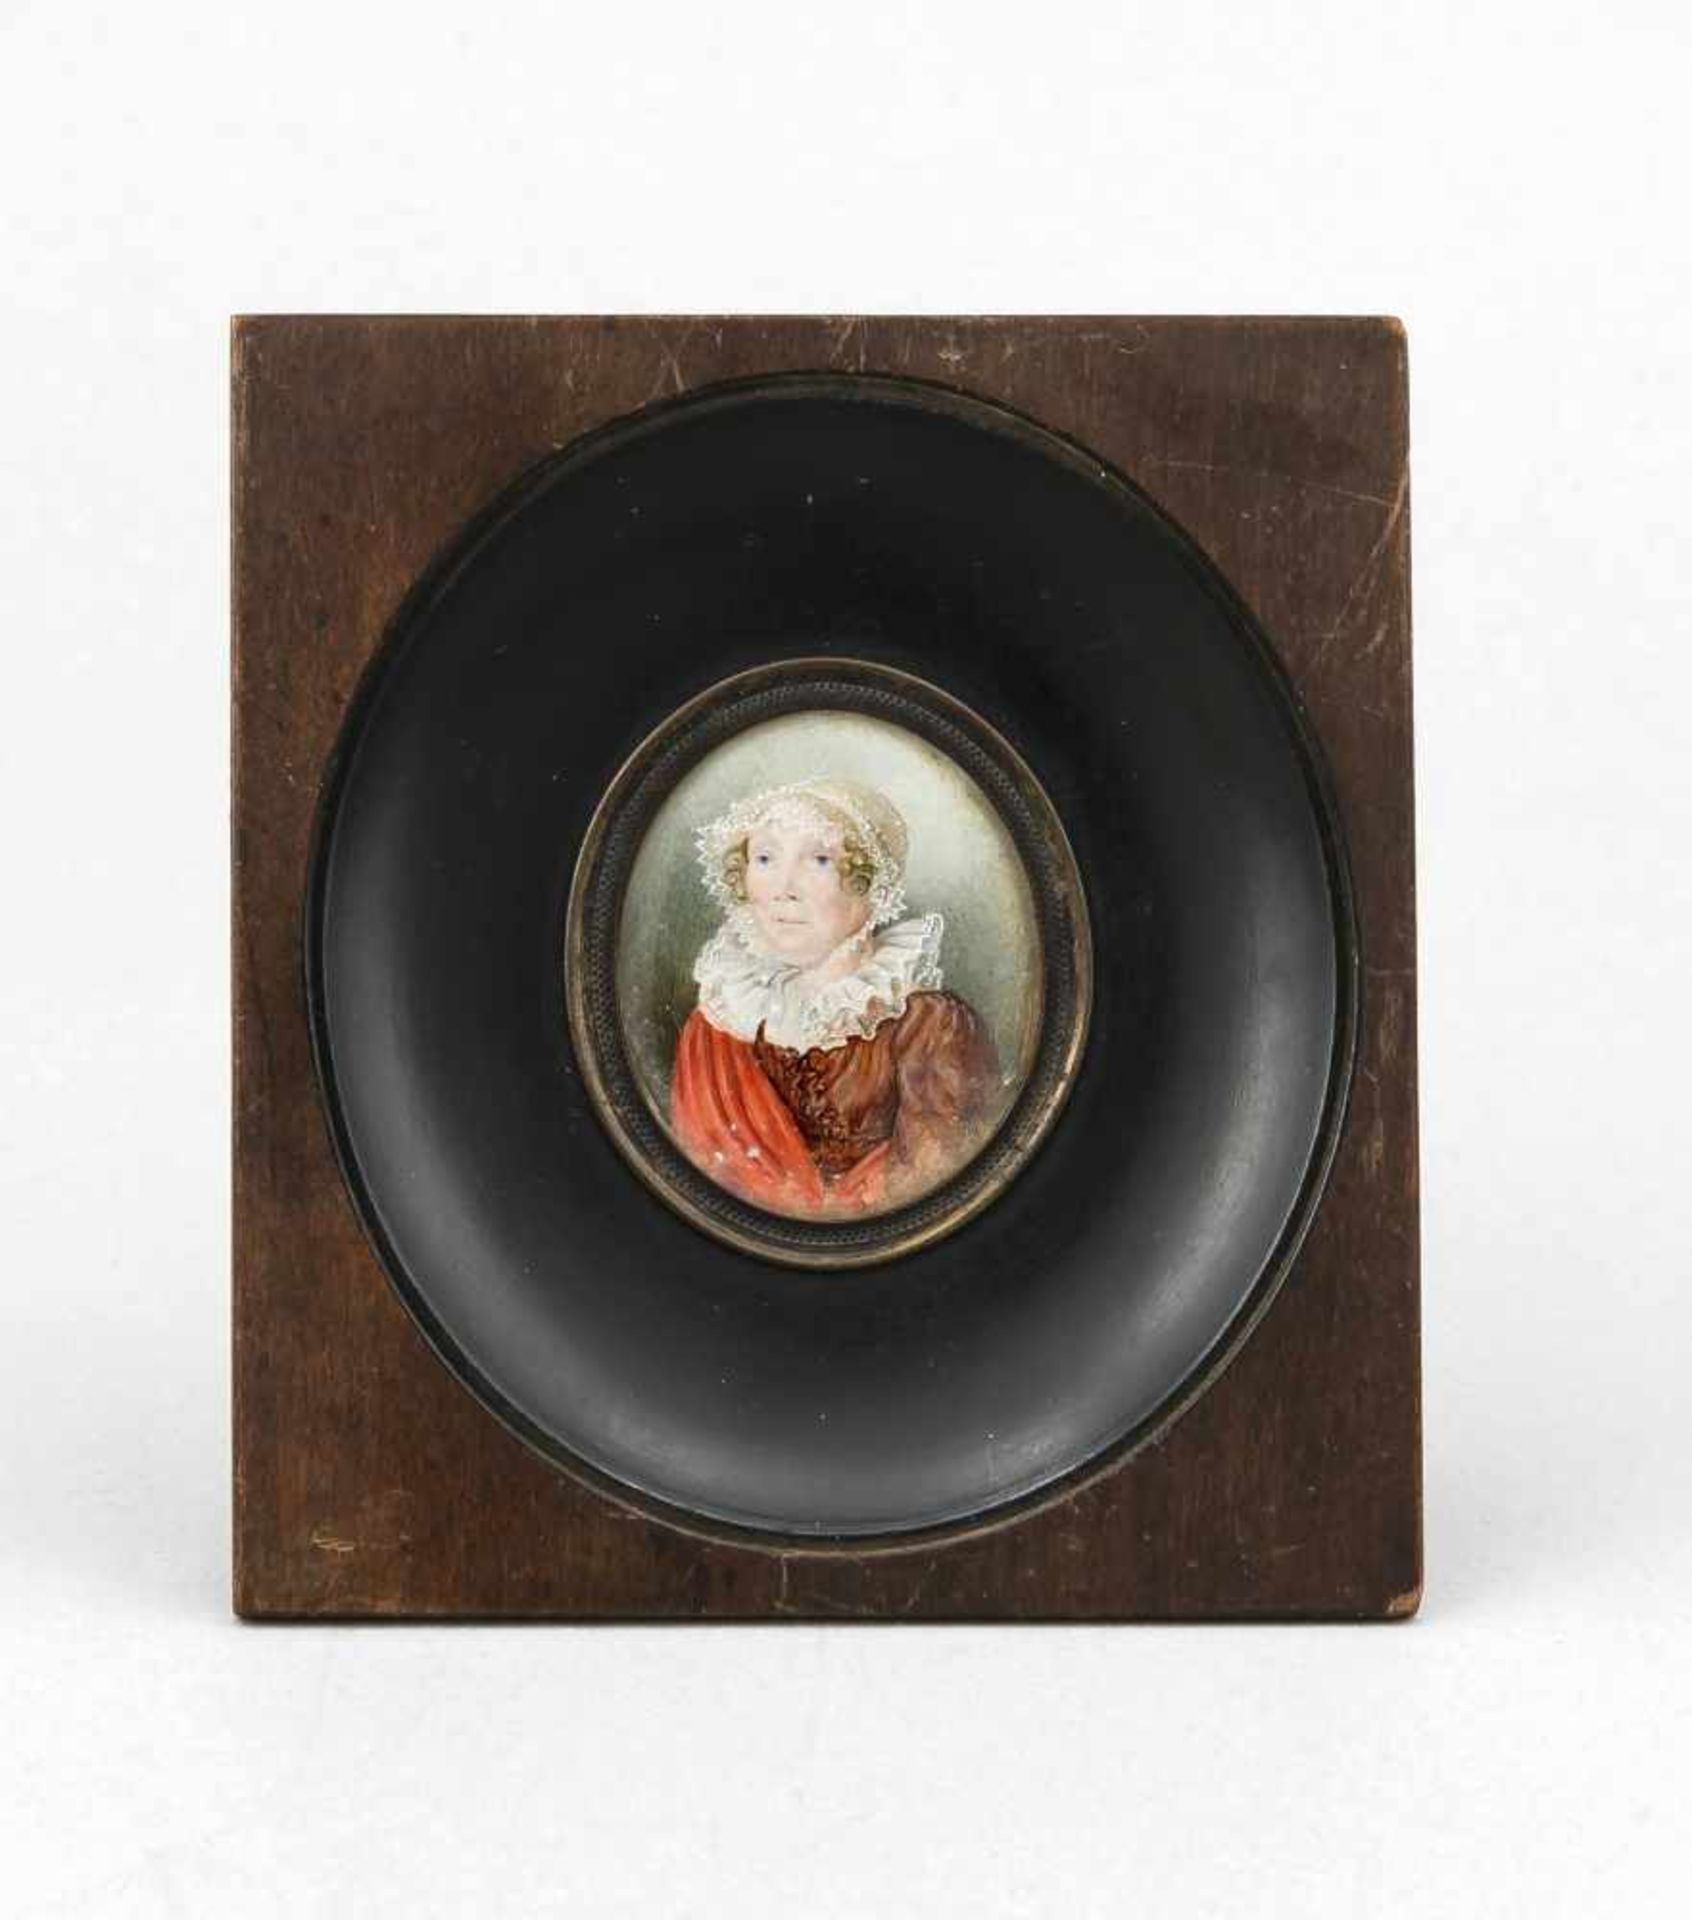 Miniatur auf Beinplatte, Deutschland, 1. H. 20. Jh., Portrait einer Frau, dunklerHolzrahmen, 11 x 10